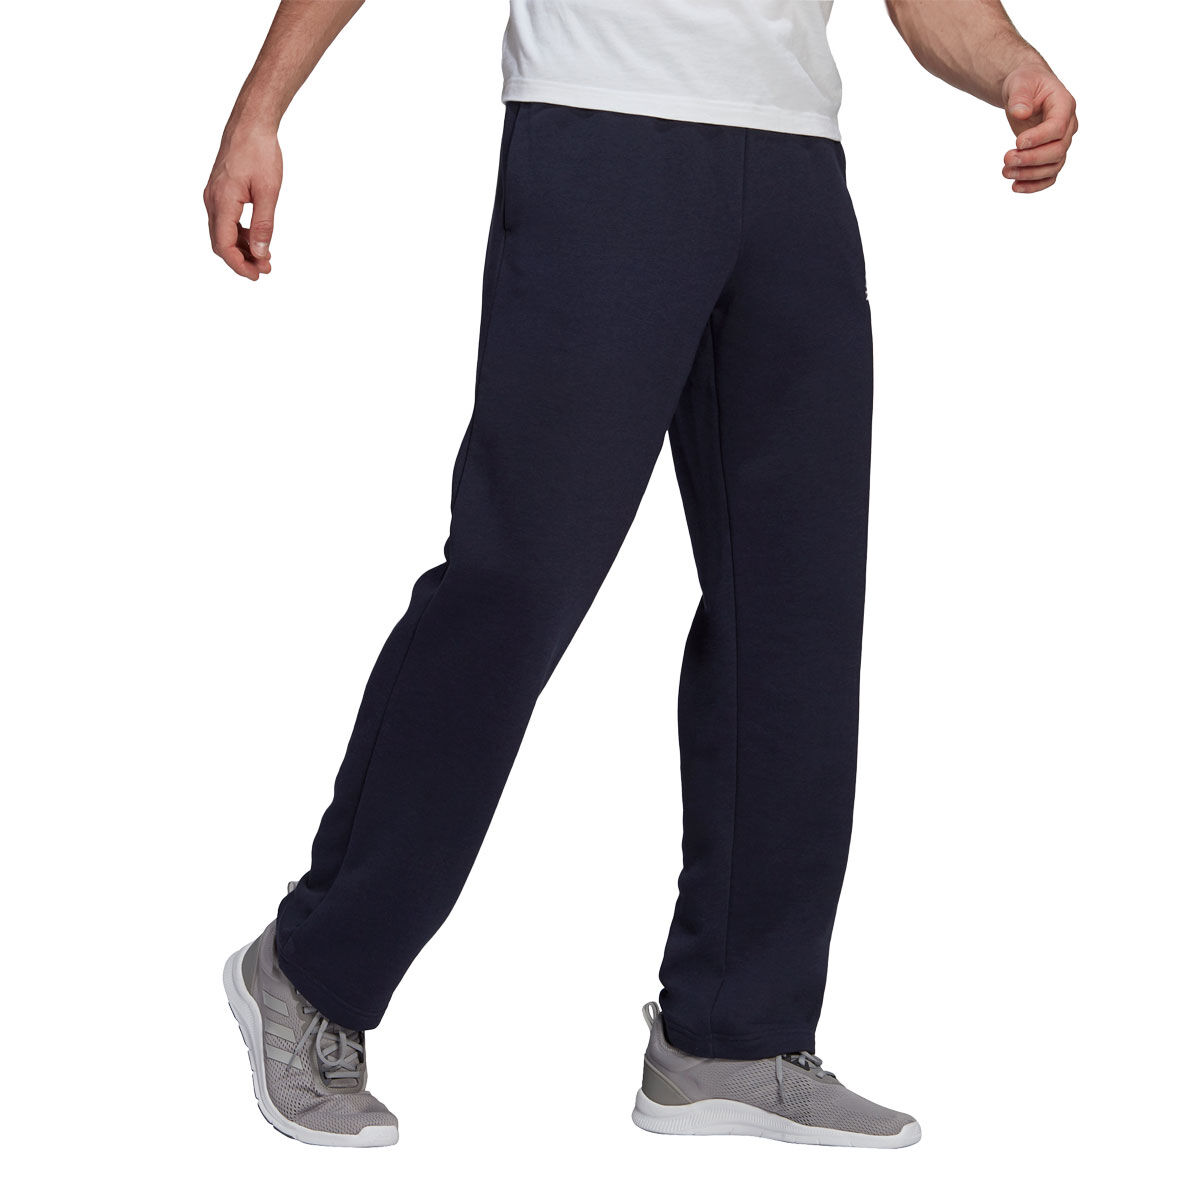 Buy SCR SPORTSWEAR S-3X 30/32/34/36/38 Long Inseam Men's Sweatpants Workout Athletic  Running Sweats Lounge Pants Zipper Pockets online | Topofstyle